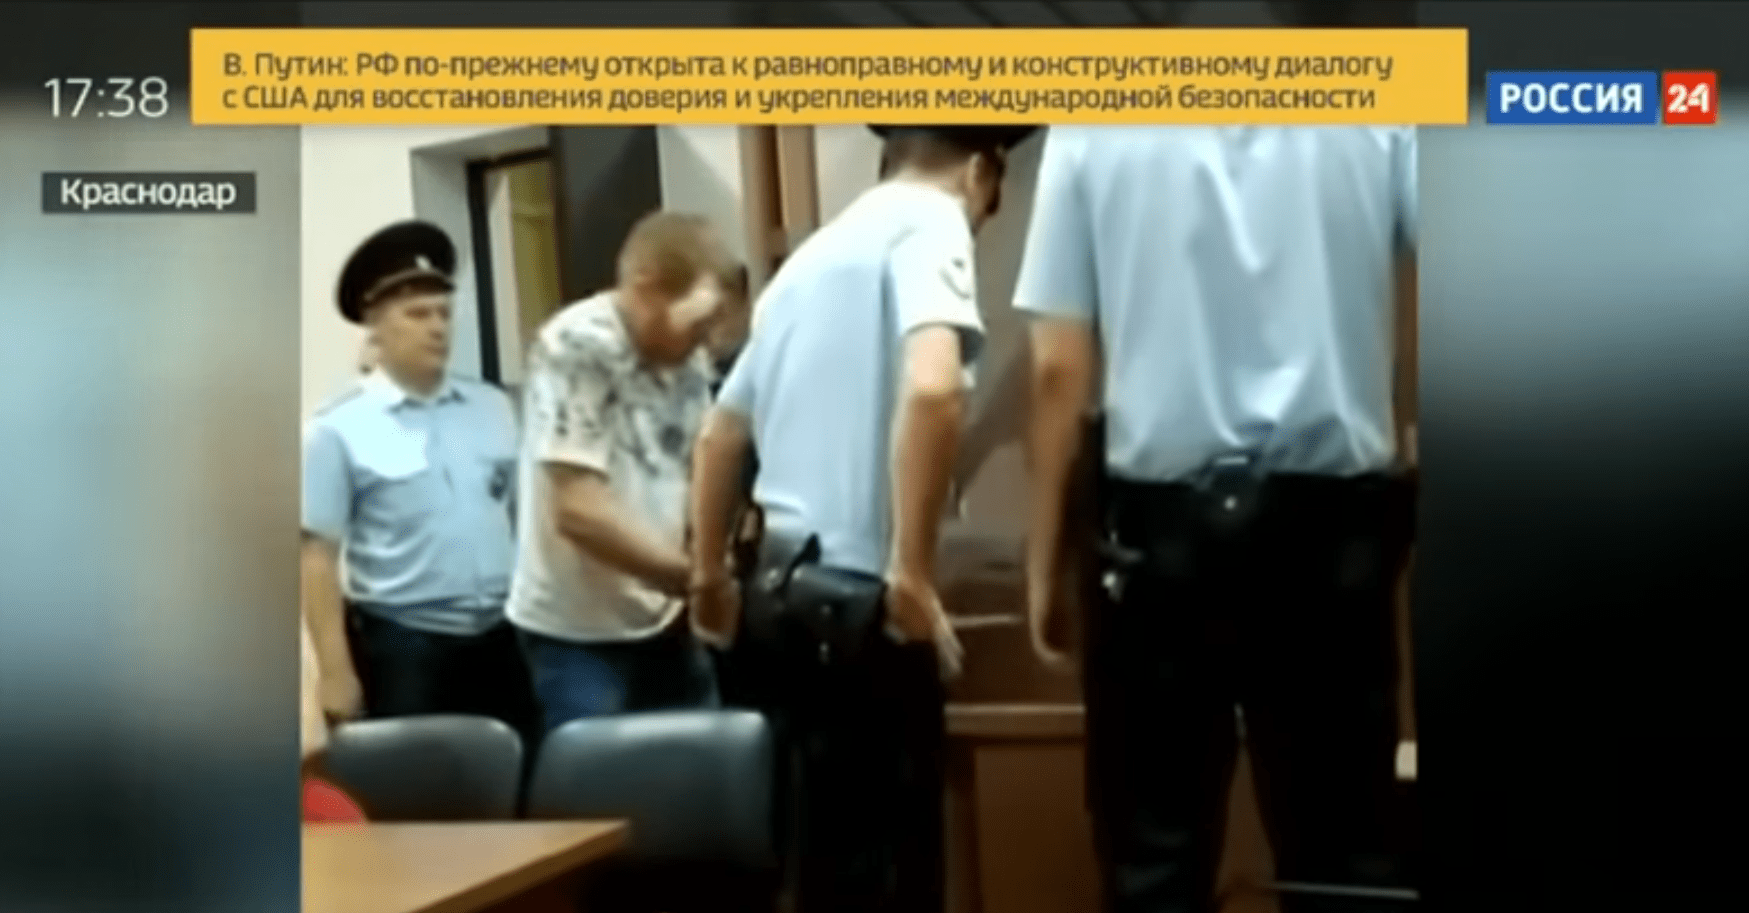 Задержанный уроженец Чечни с травмой глаза в зале суда. https://www.youtube.com/watch?v=lpS2pfFwNV4